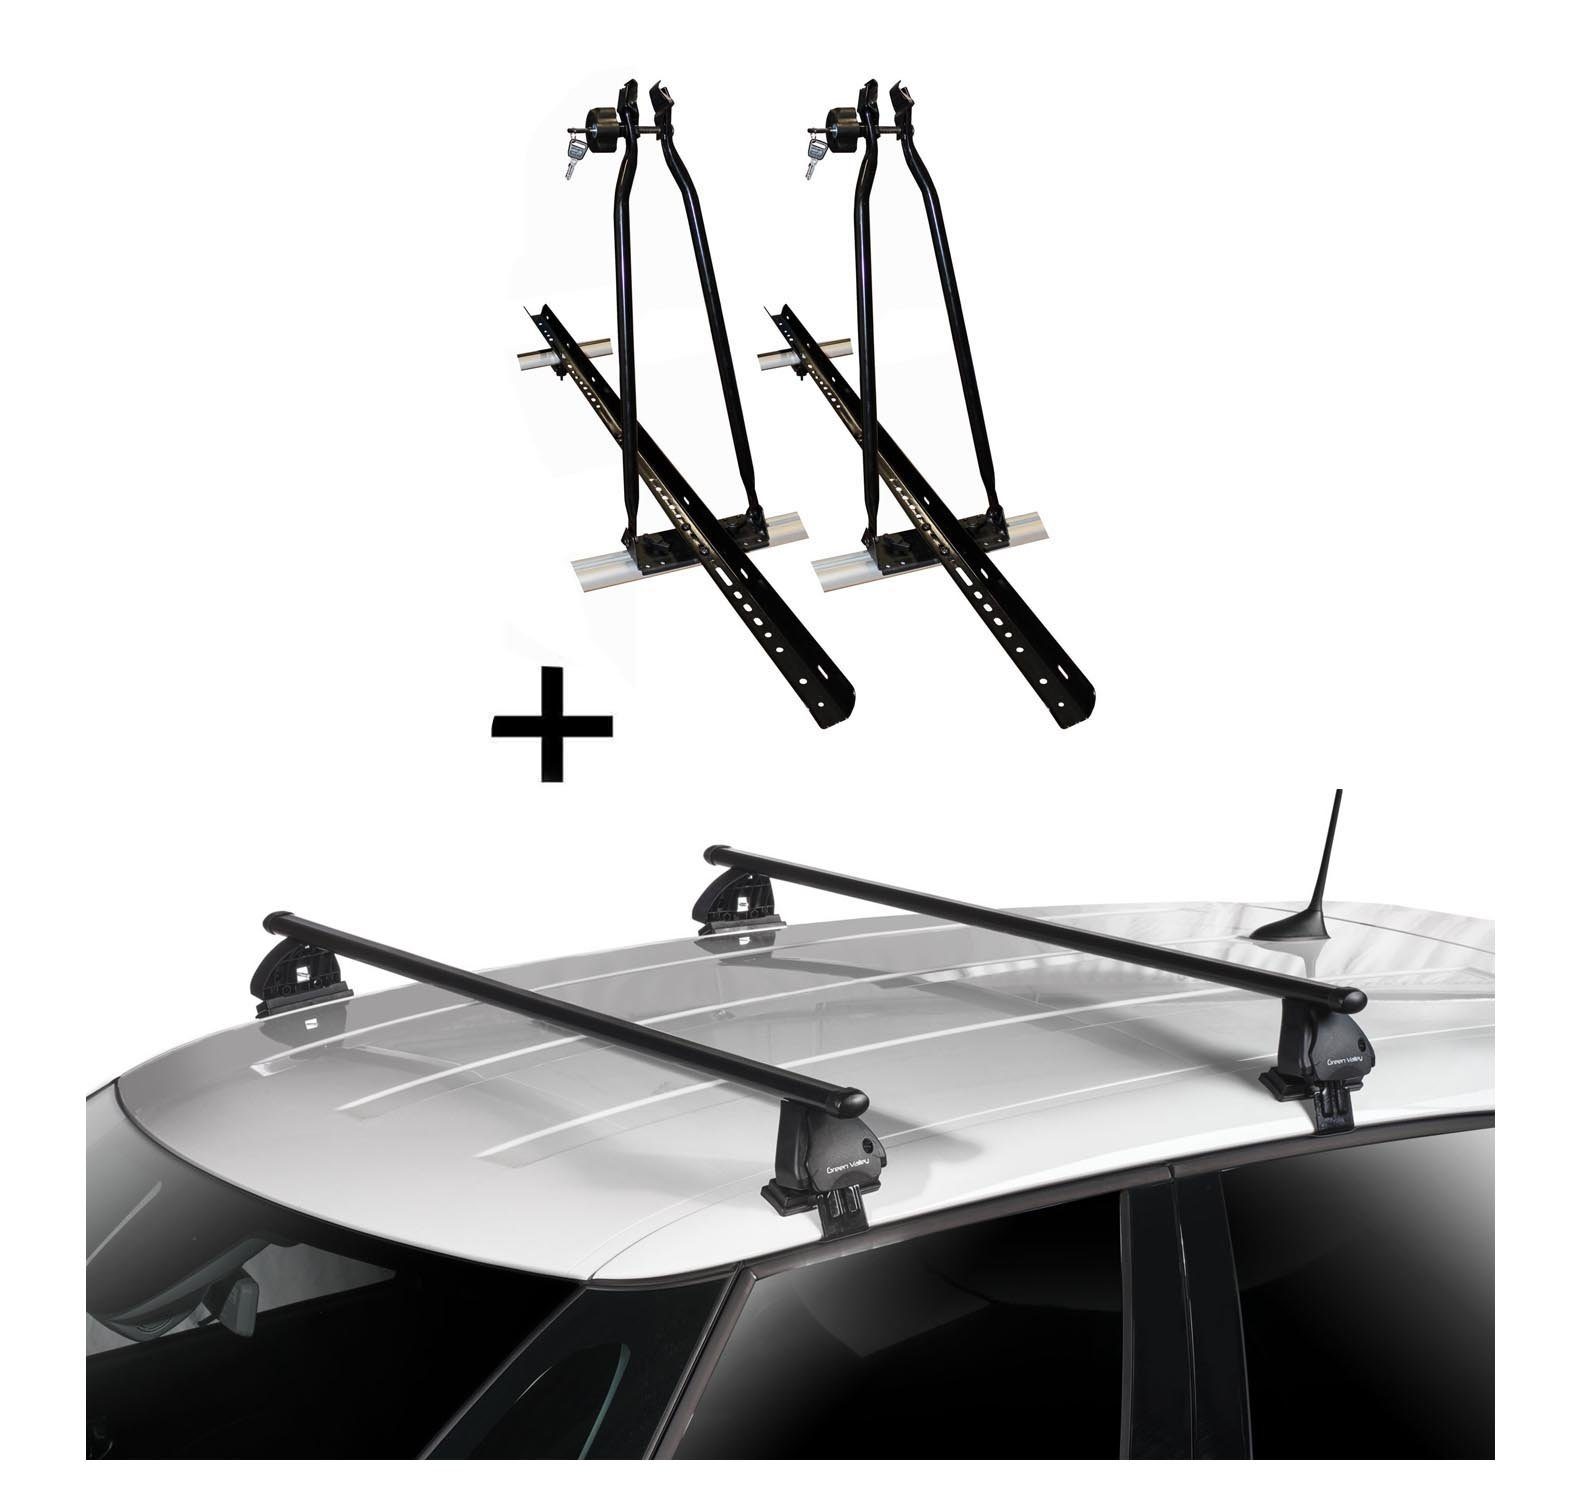 VDP Dachträger, 2x VDP Fahrradträger Dachfahrradträger + Dachträger VDP EVO Stahl kompatibel mit Renault Megane IV 5 Türer ab 2016